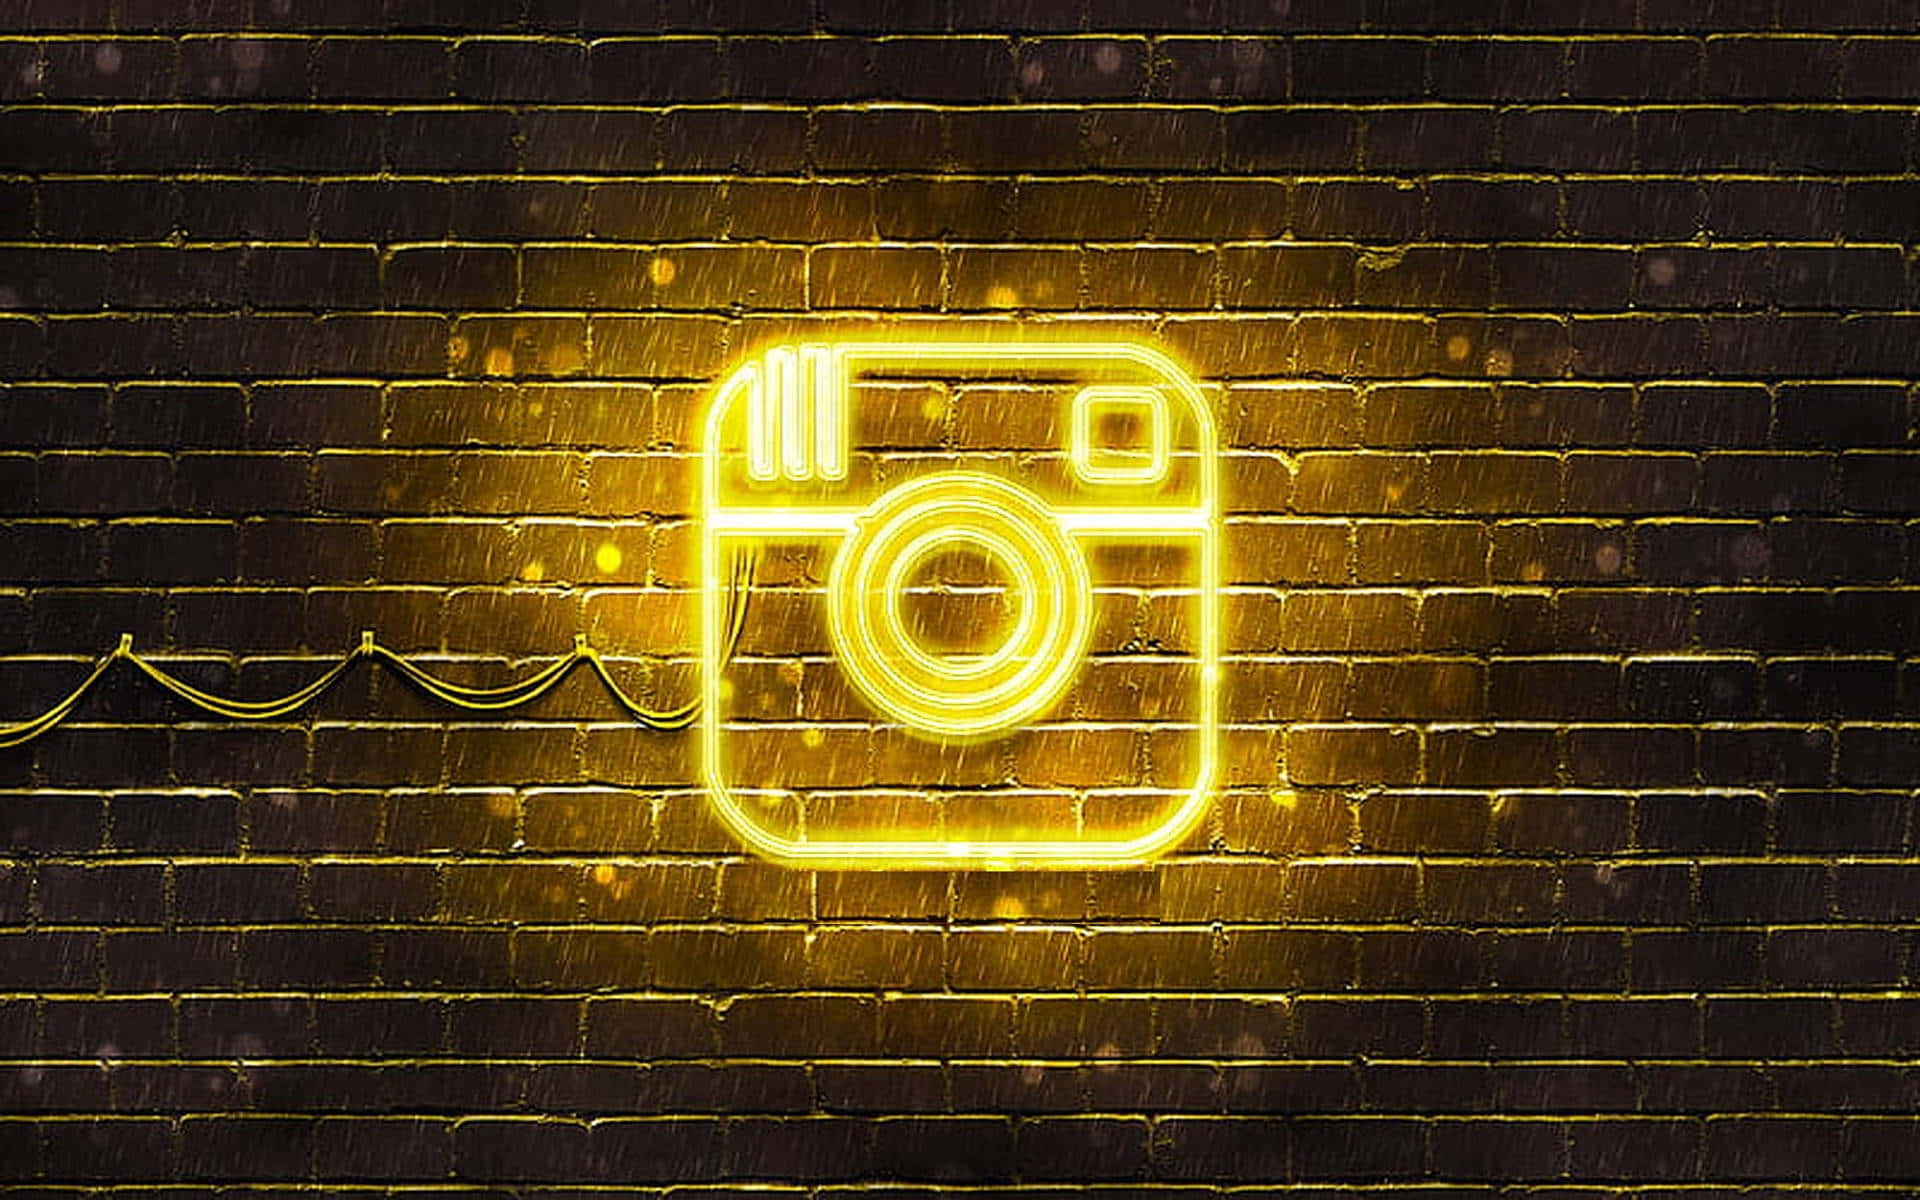 Bliinspirerad Och Visa Din Unika Estetik Med Instagram-bakgrunder Som Denna!